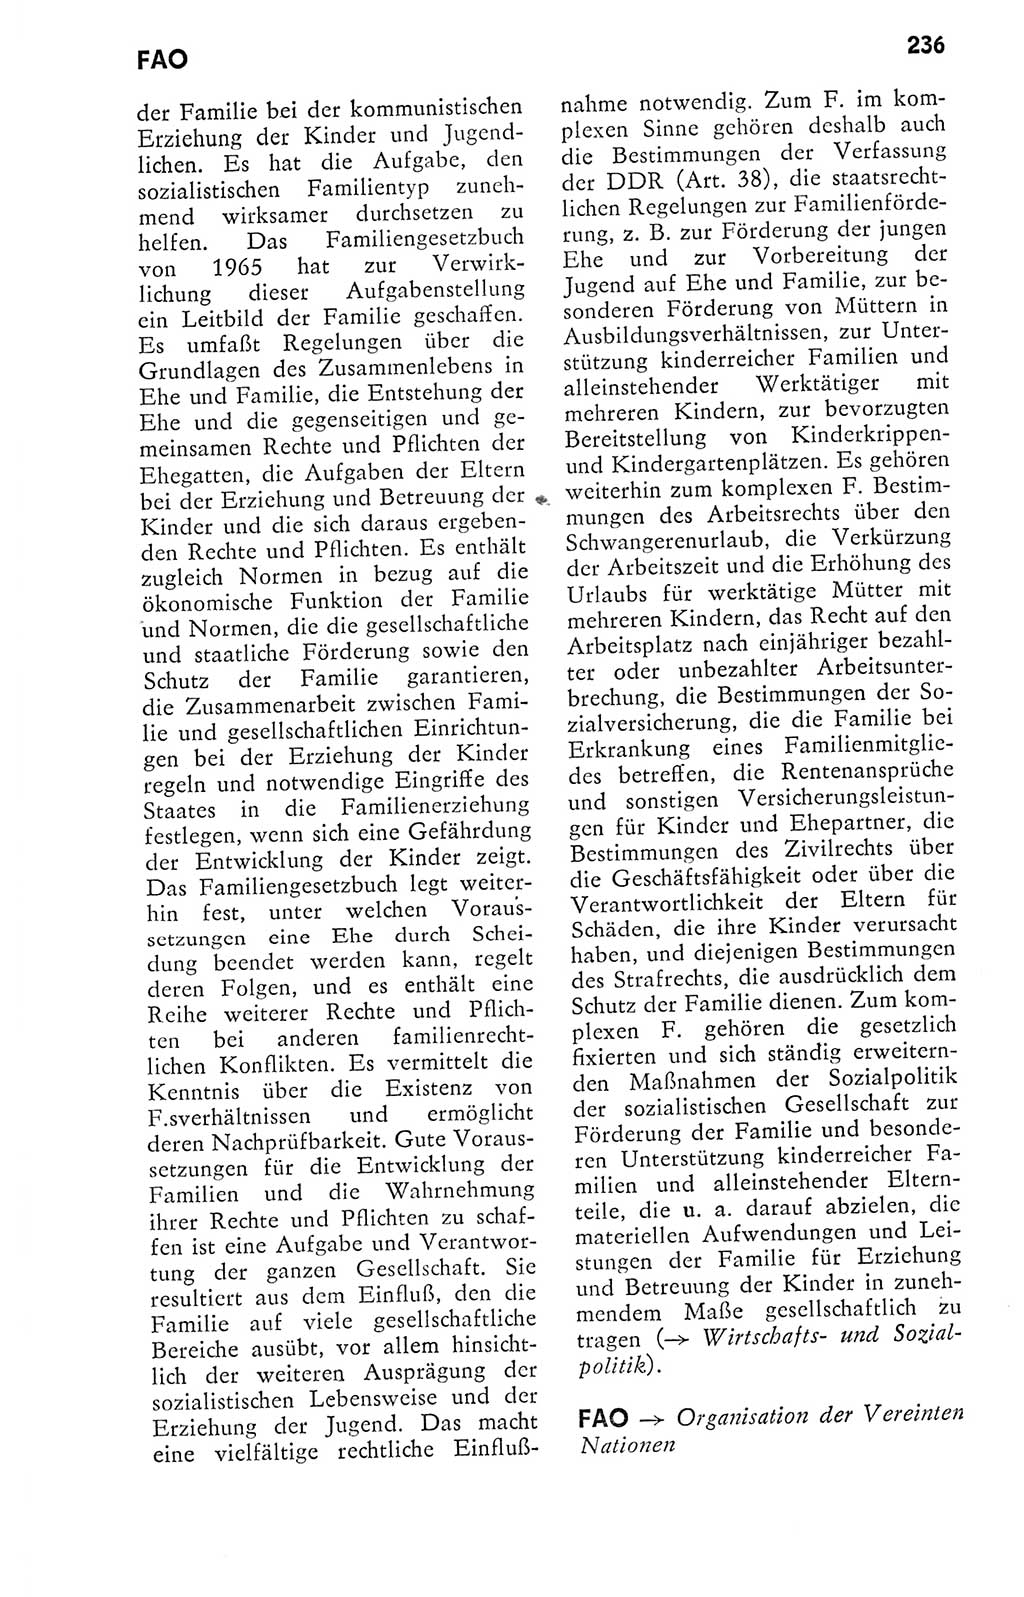 Kleines politisches Wörterbuch [Deutsche Demokratische Republik (DDR)] 1978, Seite 236 (Kl. pol. Wb. DDR 1978, S. 236)